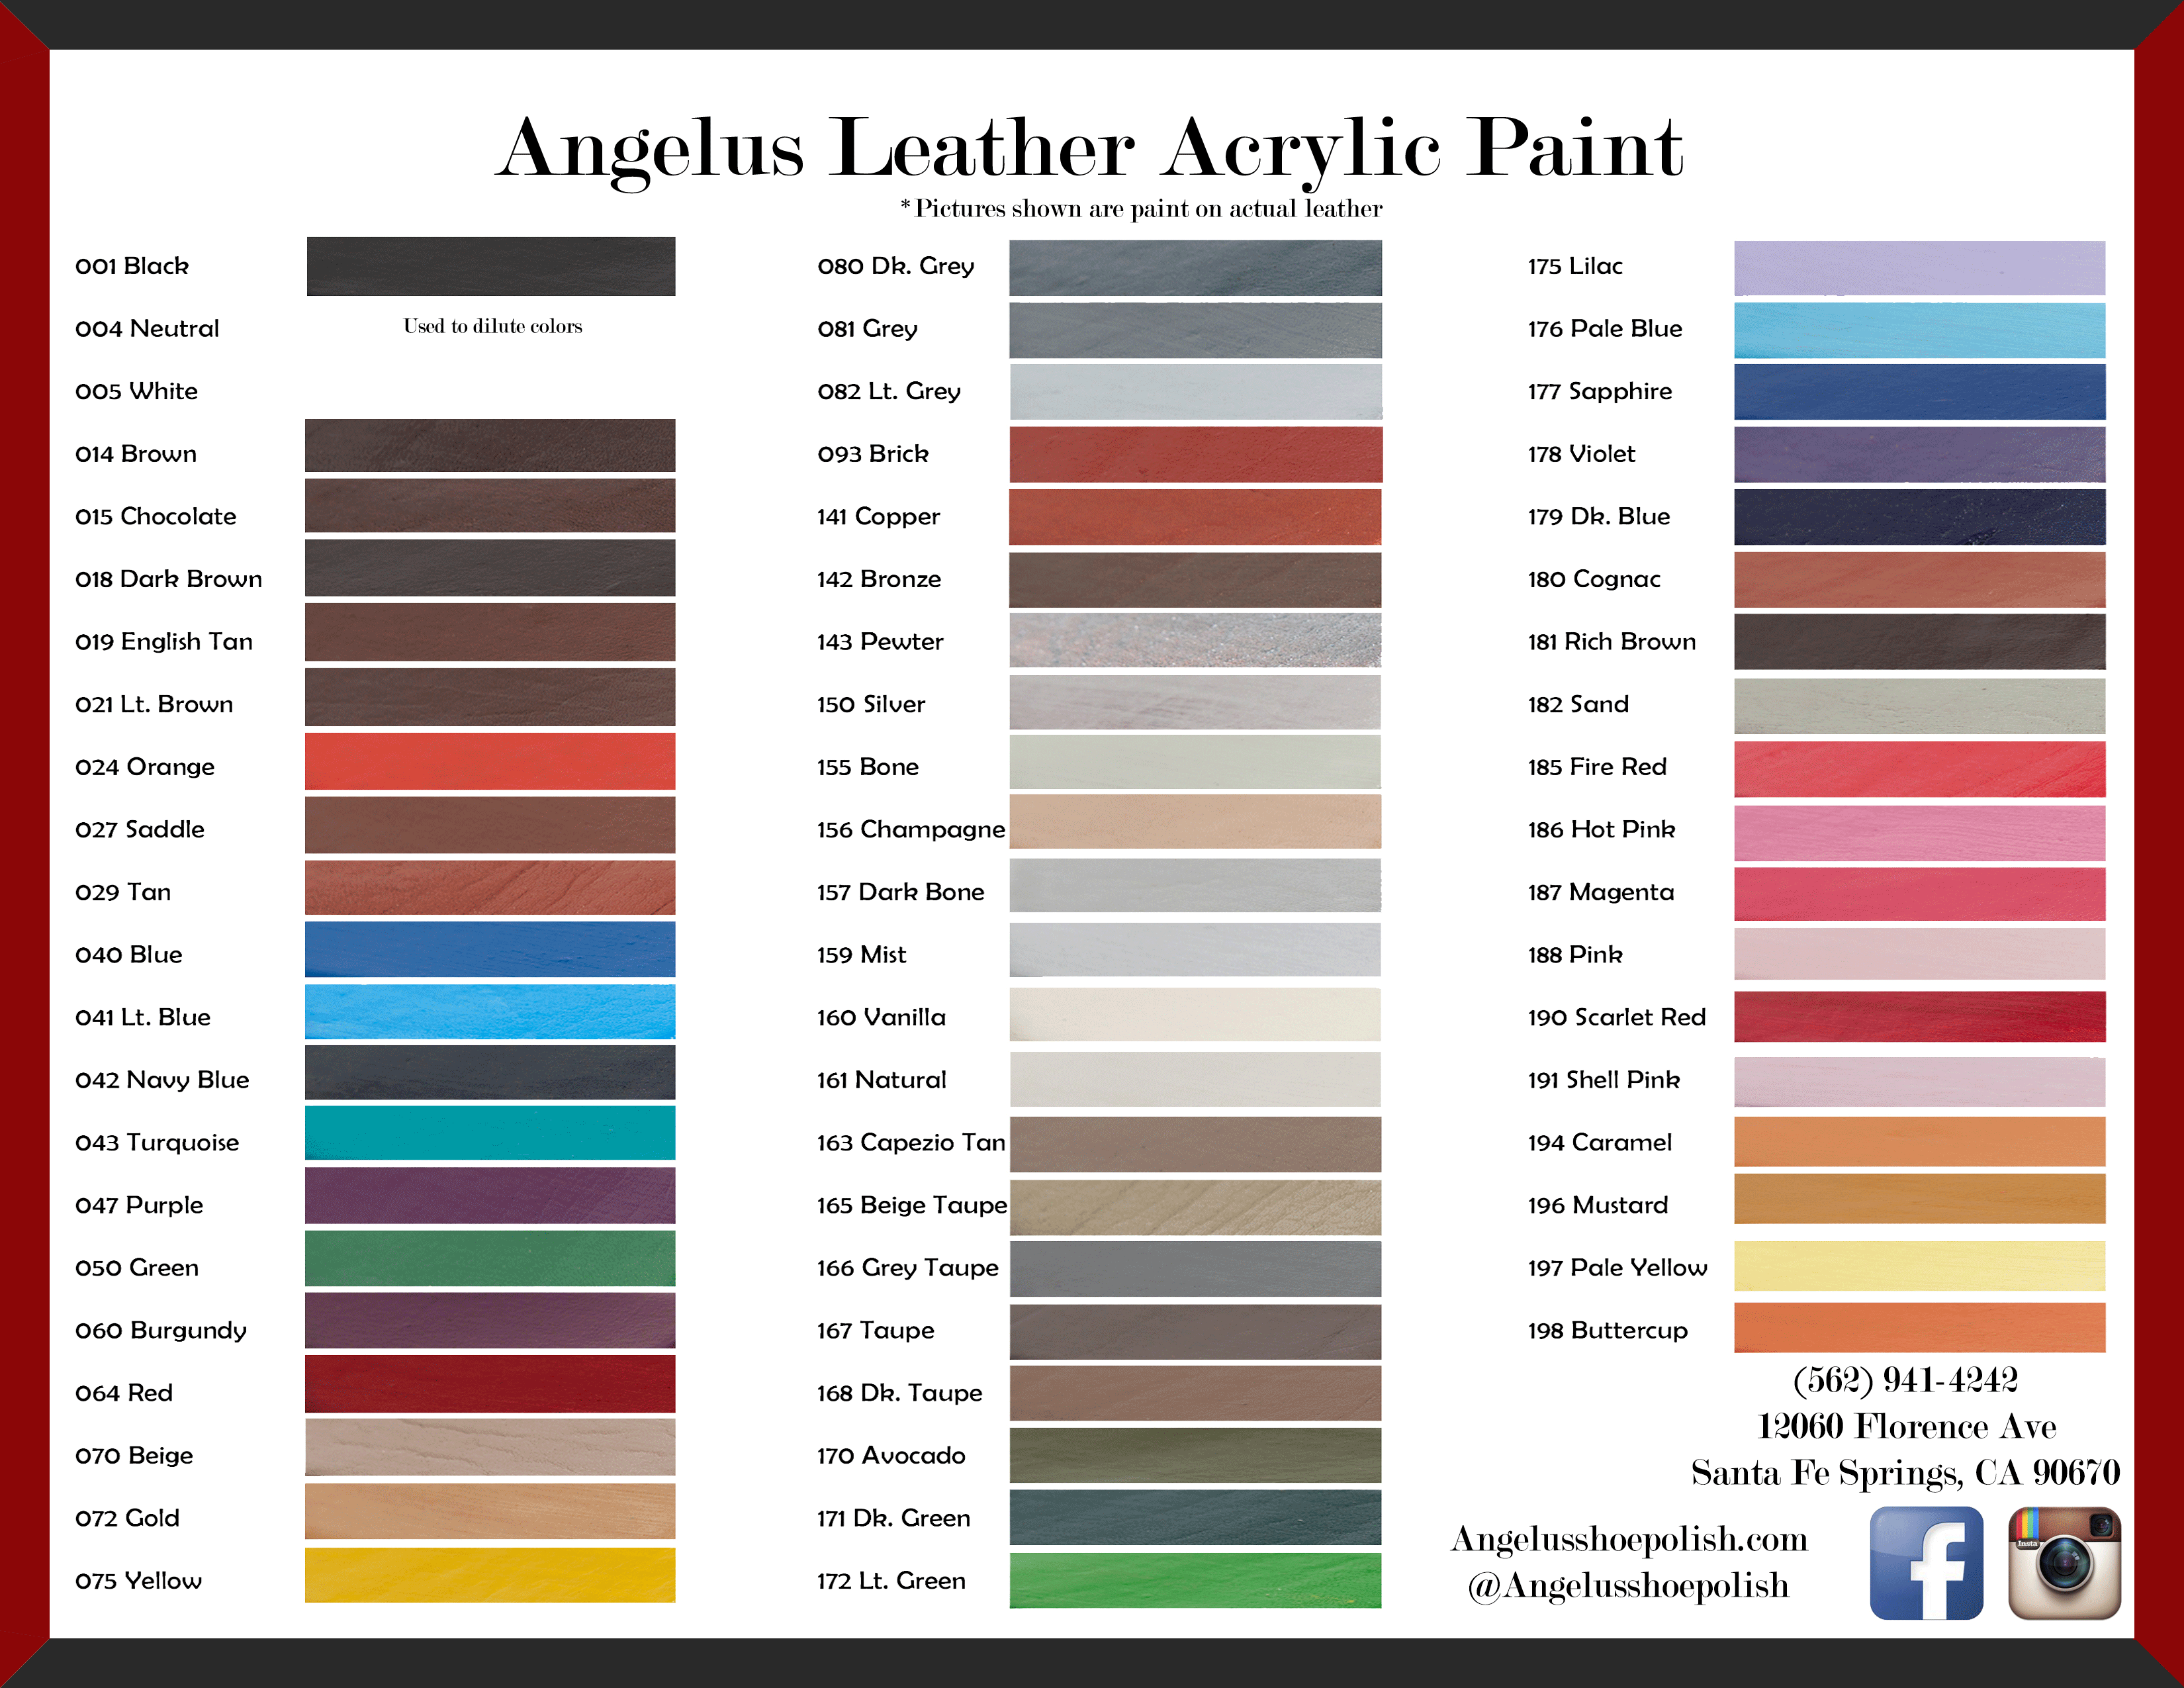 Angelus Acrylic Leather Paint